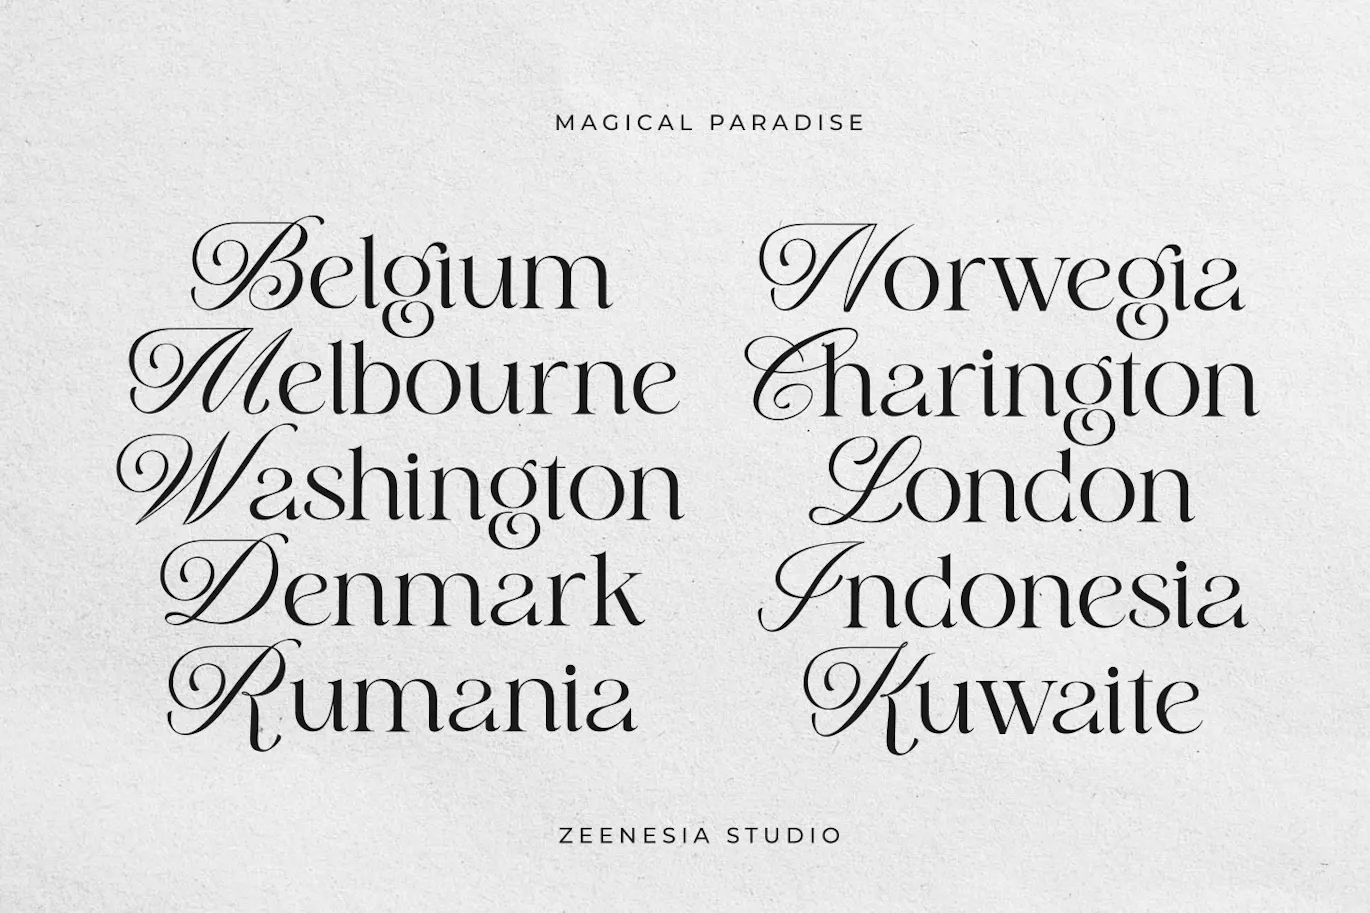 衬线与花体风格结合的现代风标题字体 - Magical Paradise 设计字体 第12张